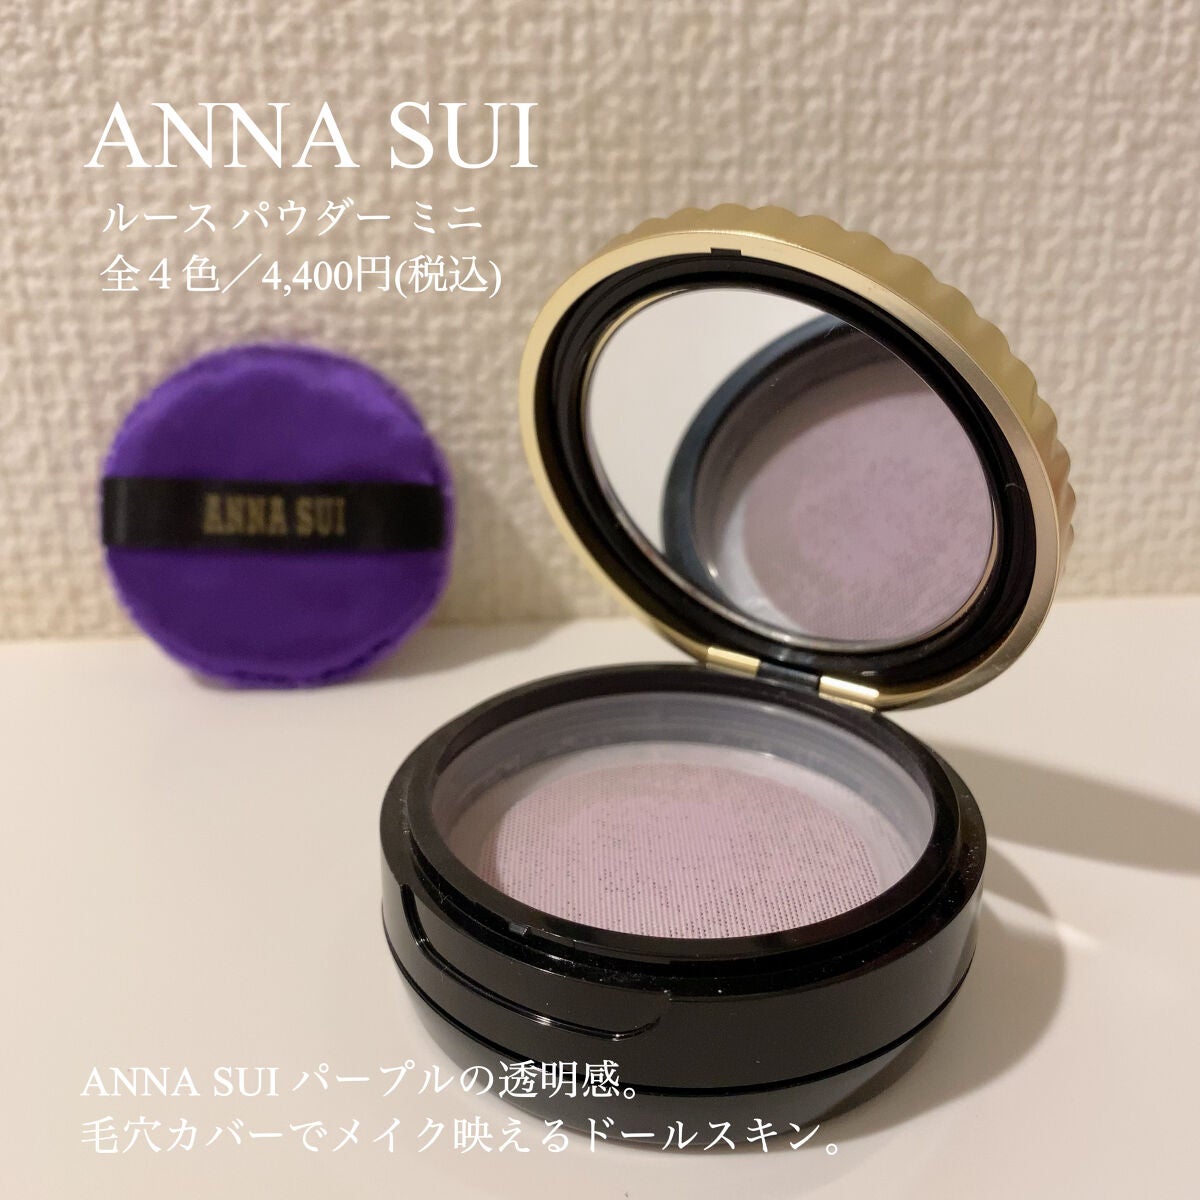 【新品・未使用】ANNA SUI ルースパウダー 200